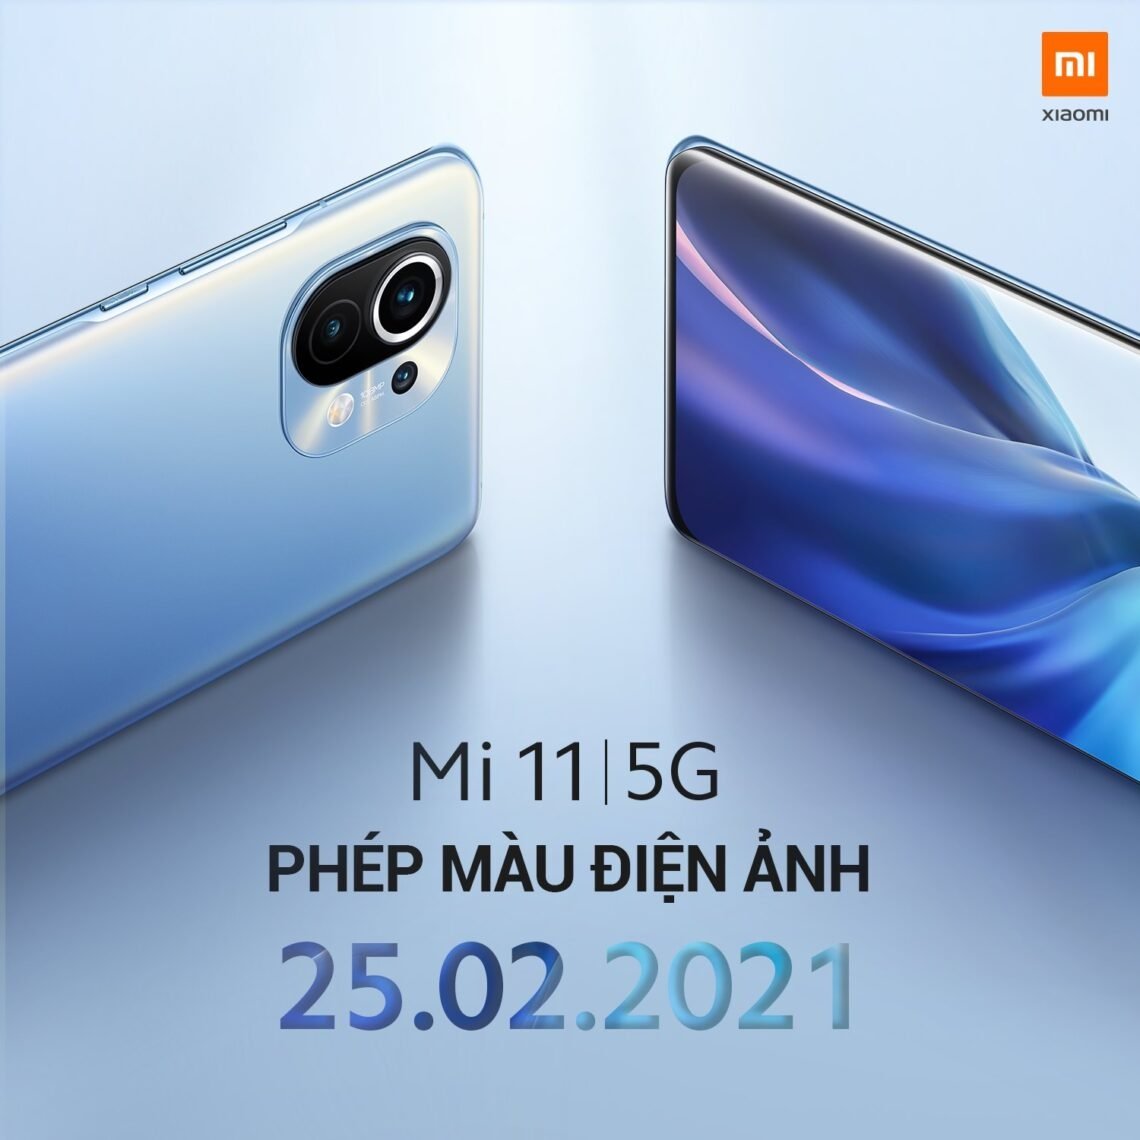 Xiaomi Mi 11 sẽ ra mắt tại thị trường Việt Nam vào 25/02/2021